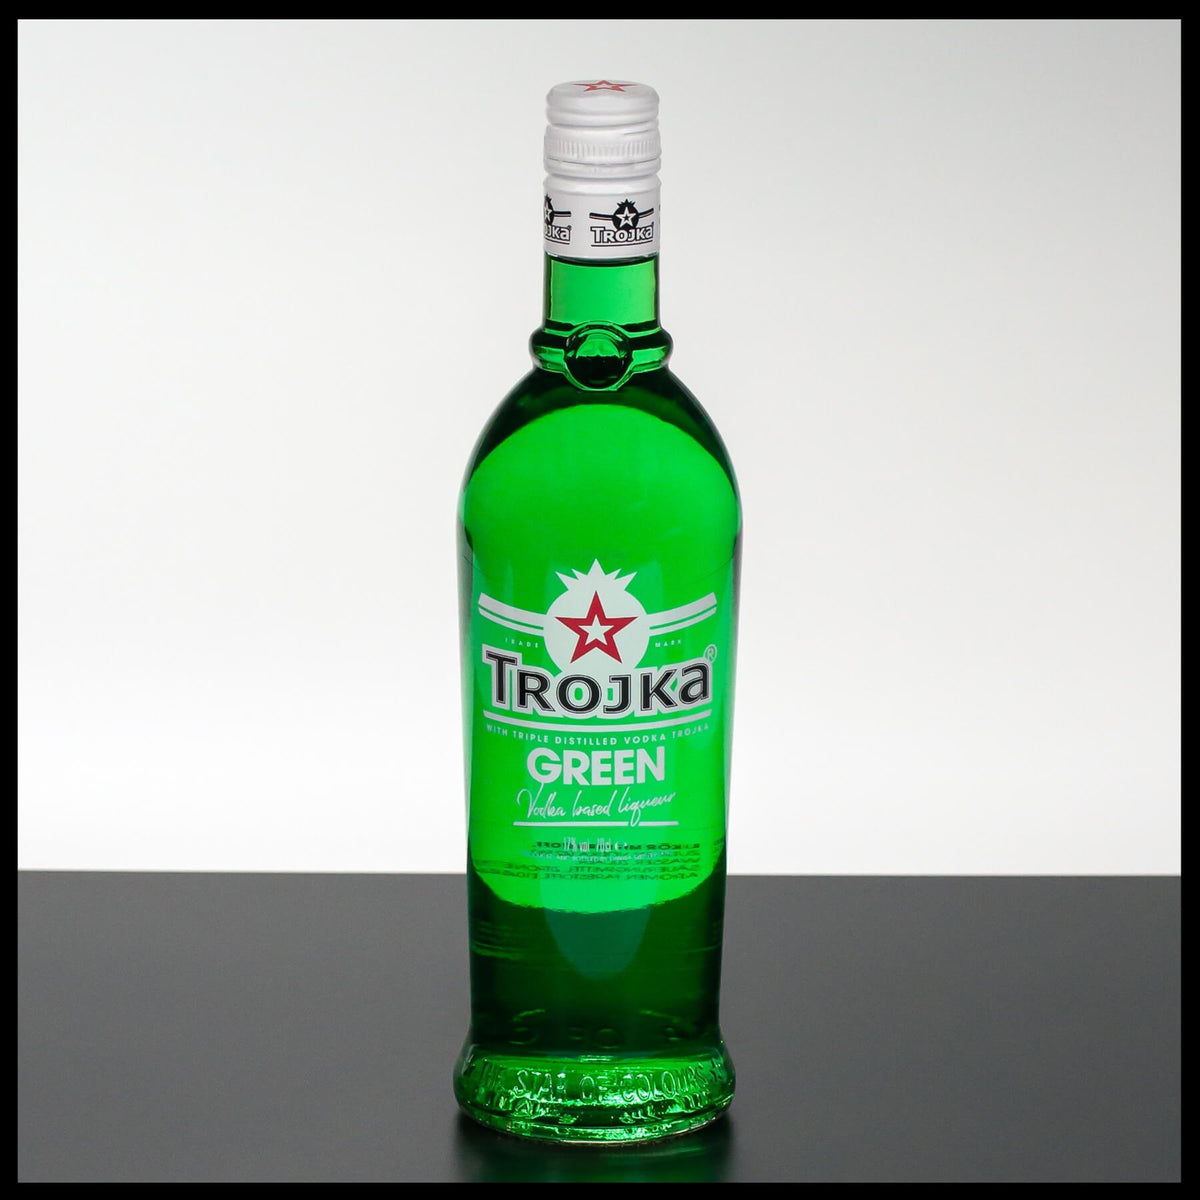 Trojka Vodka Green Likör 0,7L - 17% Vol. - Trinklusiv